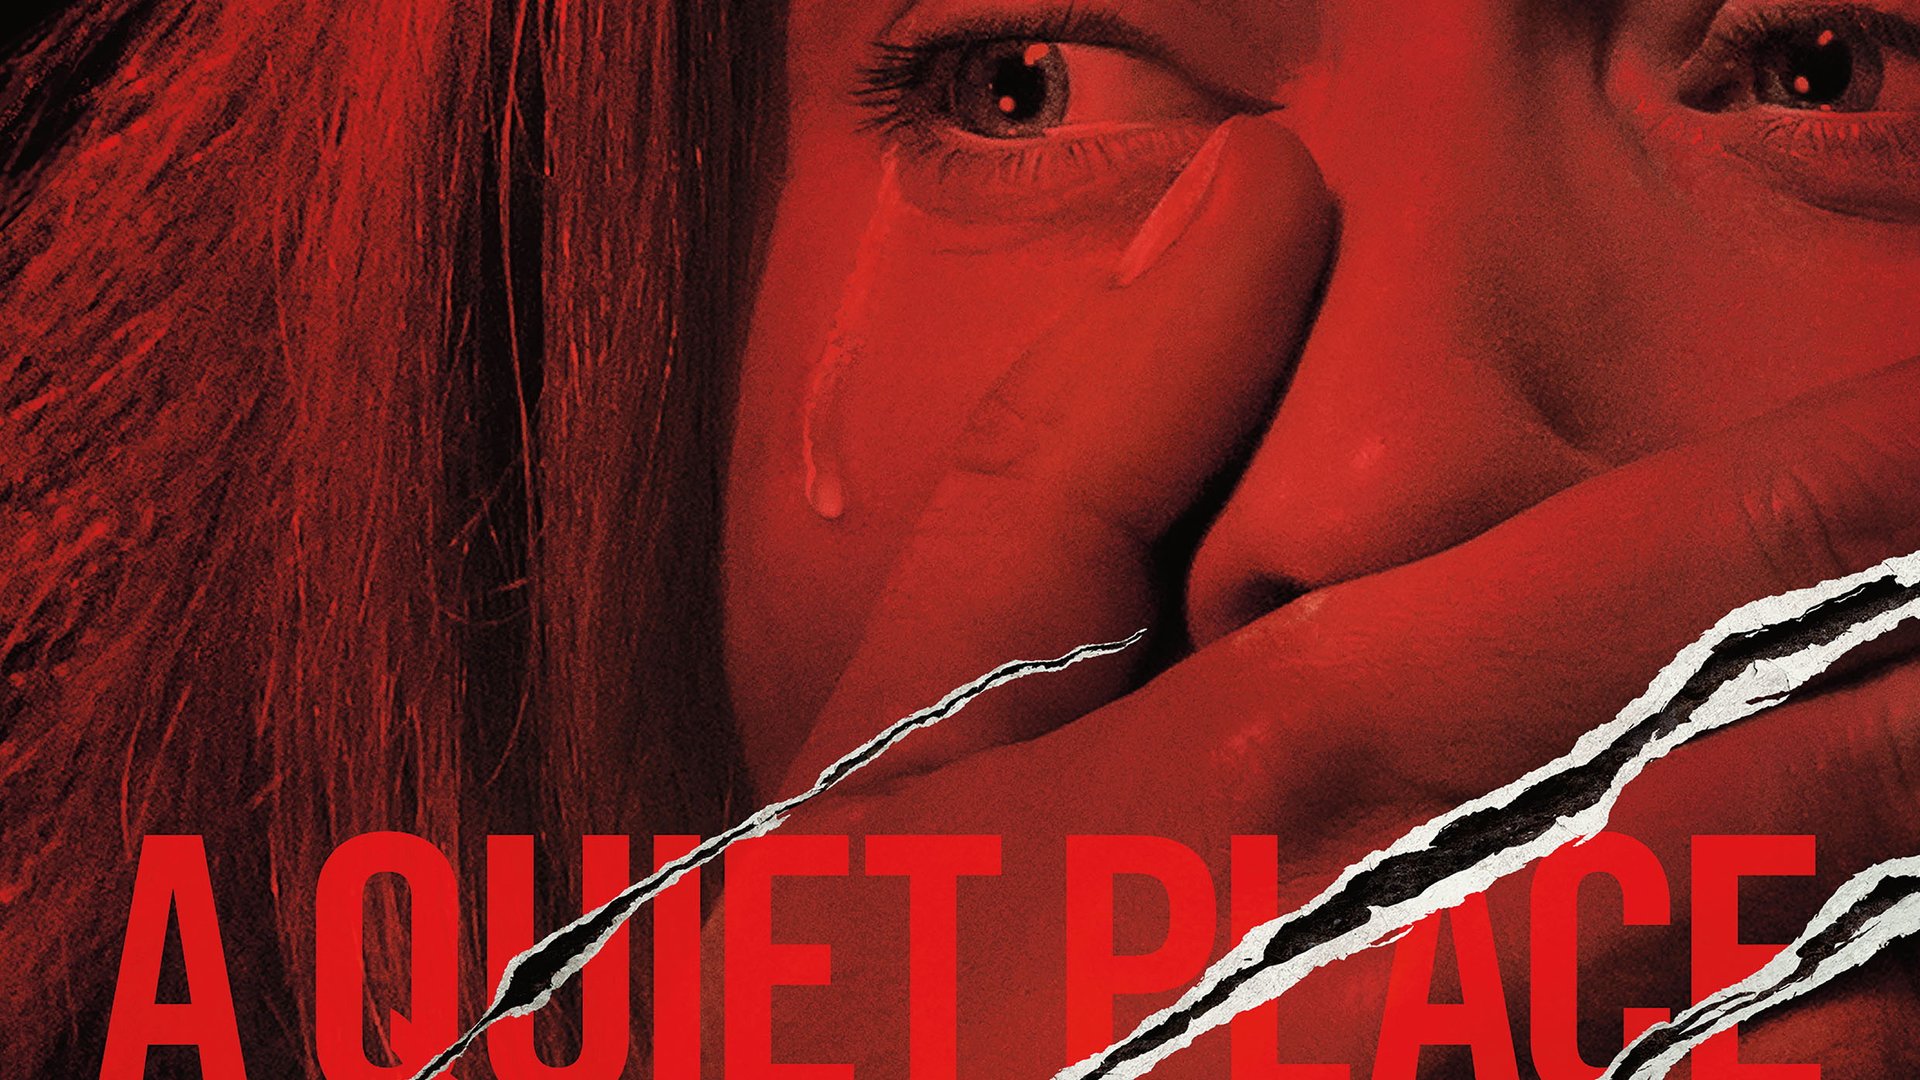 A Quiet Place Neuer Horrorfilm Mit Emily Blunt Schockiert Und Begeistert Festivalbesucher Kino De